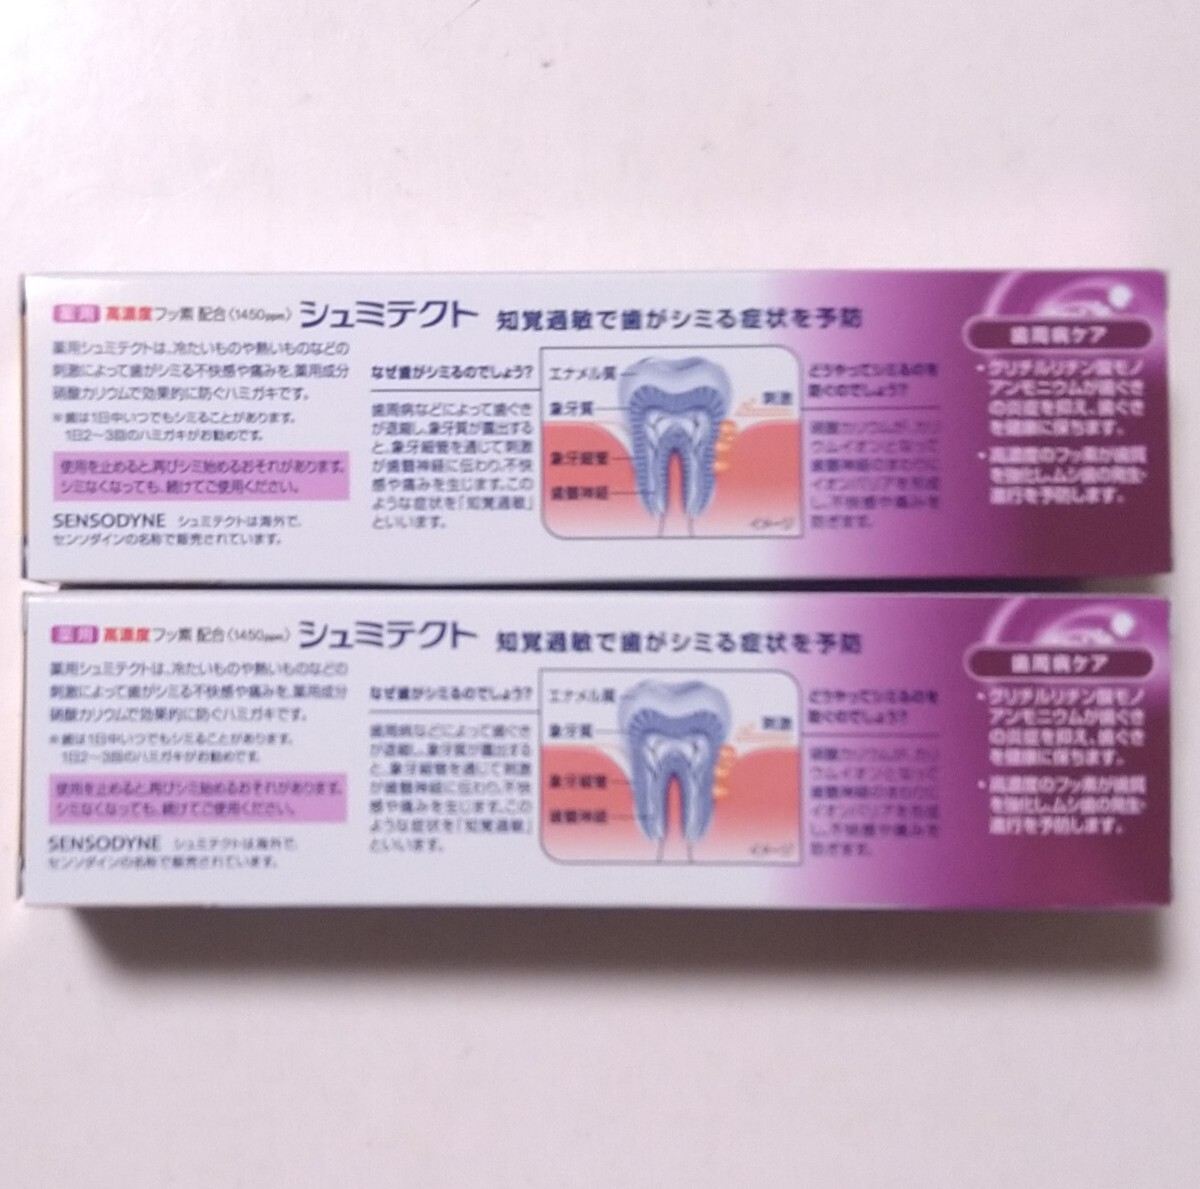  лекарство для shumi tech to зуб . болезнь уход - migaki зубная паста 10% больше количество внутри емкость 99g 2 шт. комплект 